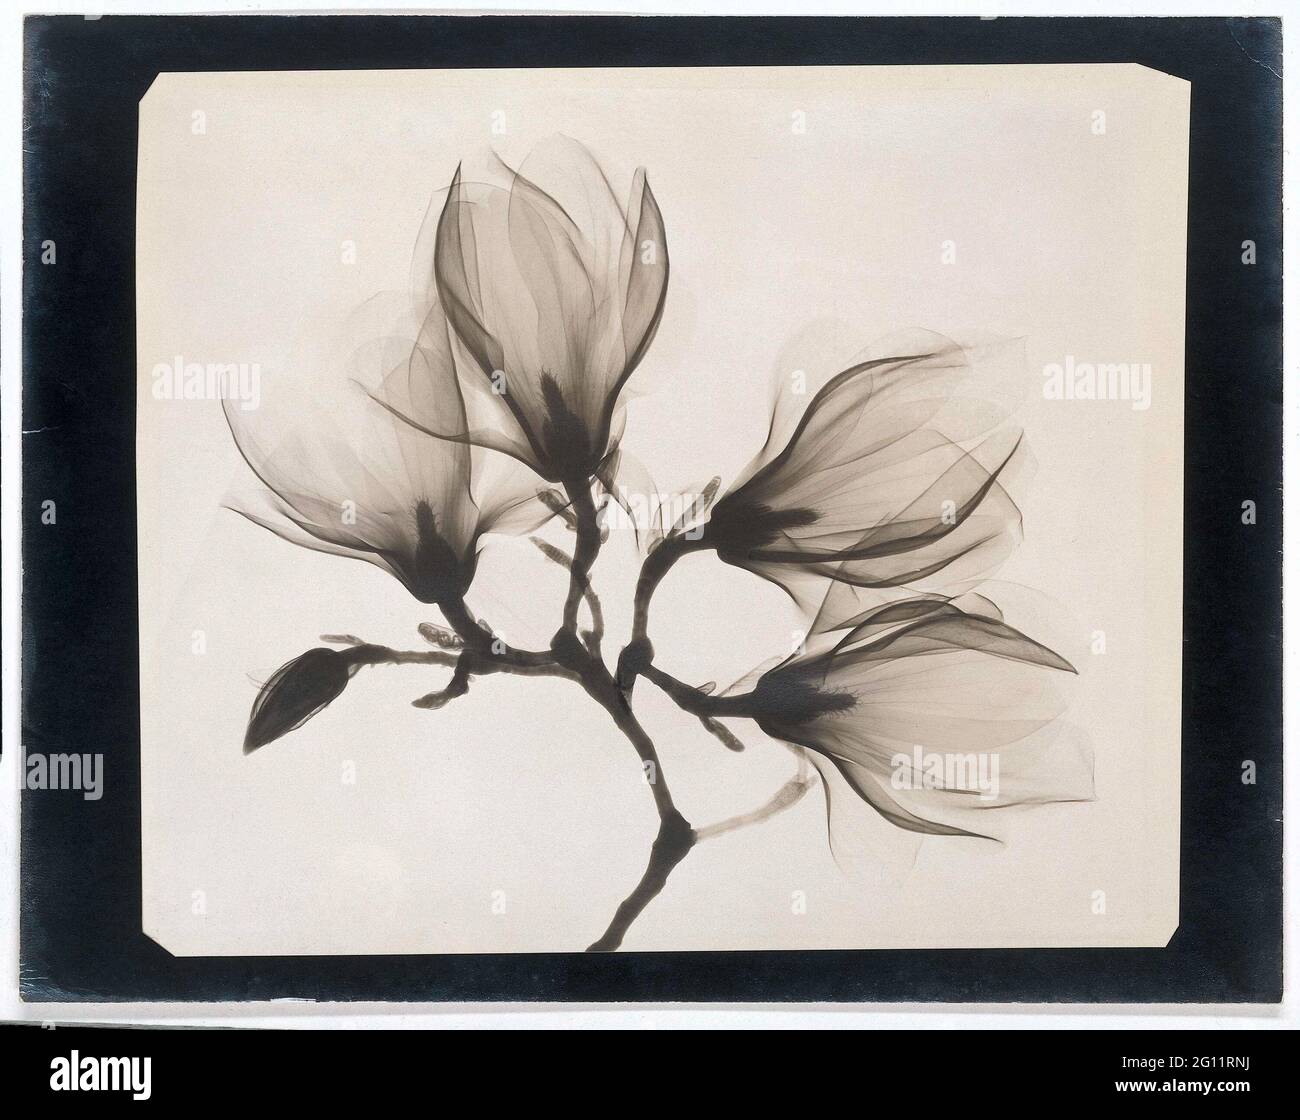 Magnolia Branch con quattro fiori. Dopo che i raggi X furono scoperti nel 1895, arrivarono presto ad essere applicati nella fotografia. Le radiografie hanno reso visibile ciò che era nascosto all'occhio umano. Servivano principalmente scopi utili, come rivelare fratture. Questa fotografia, tuttavia, è stata probabilmente presa semplicemente per la sua bellezza pura. I petali difficilmente assorbivano i raggi X, ed è per questo che appaiono così trasparenti ed eterei nella fotografia. Foto Stock